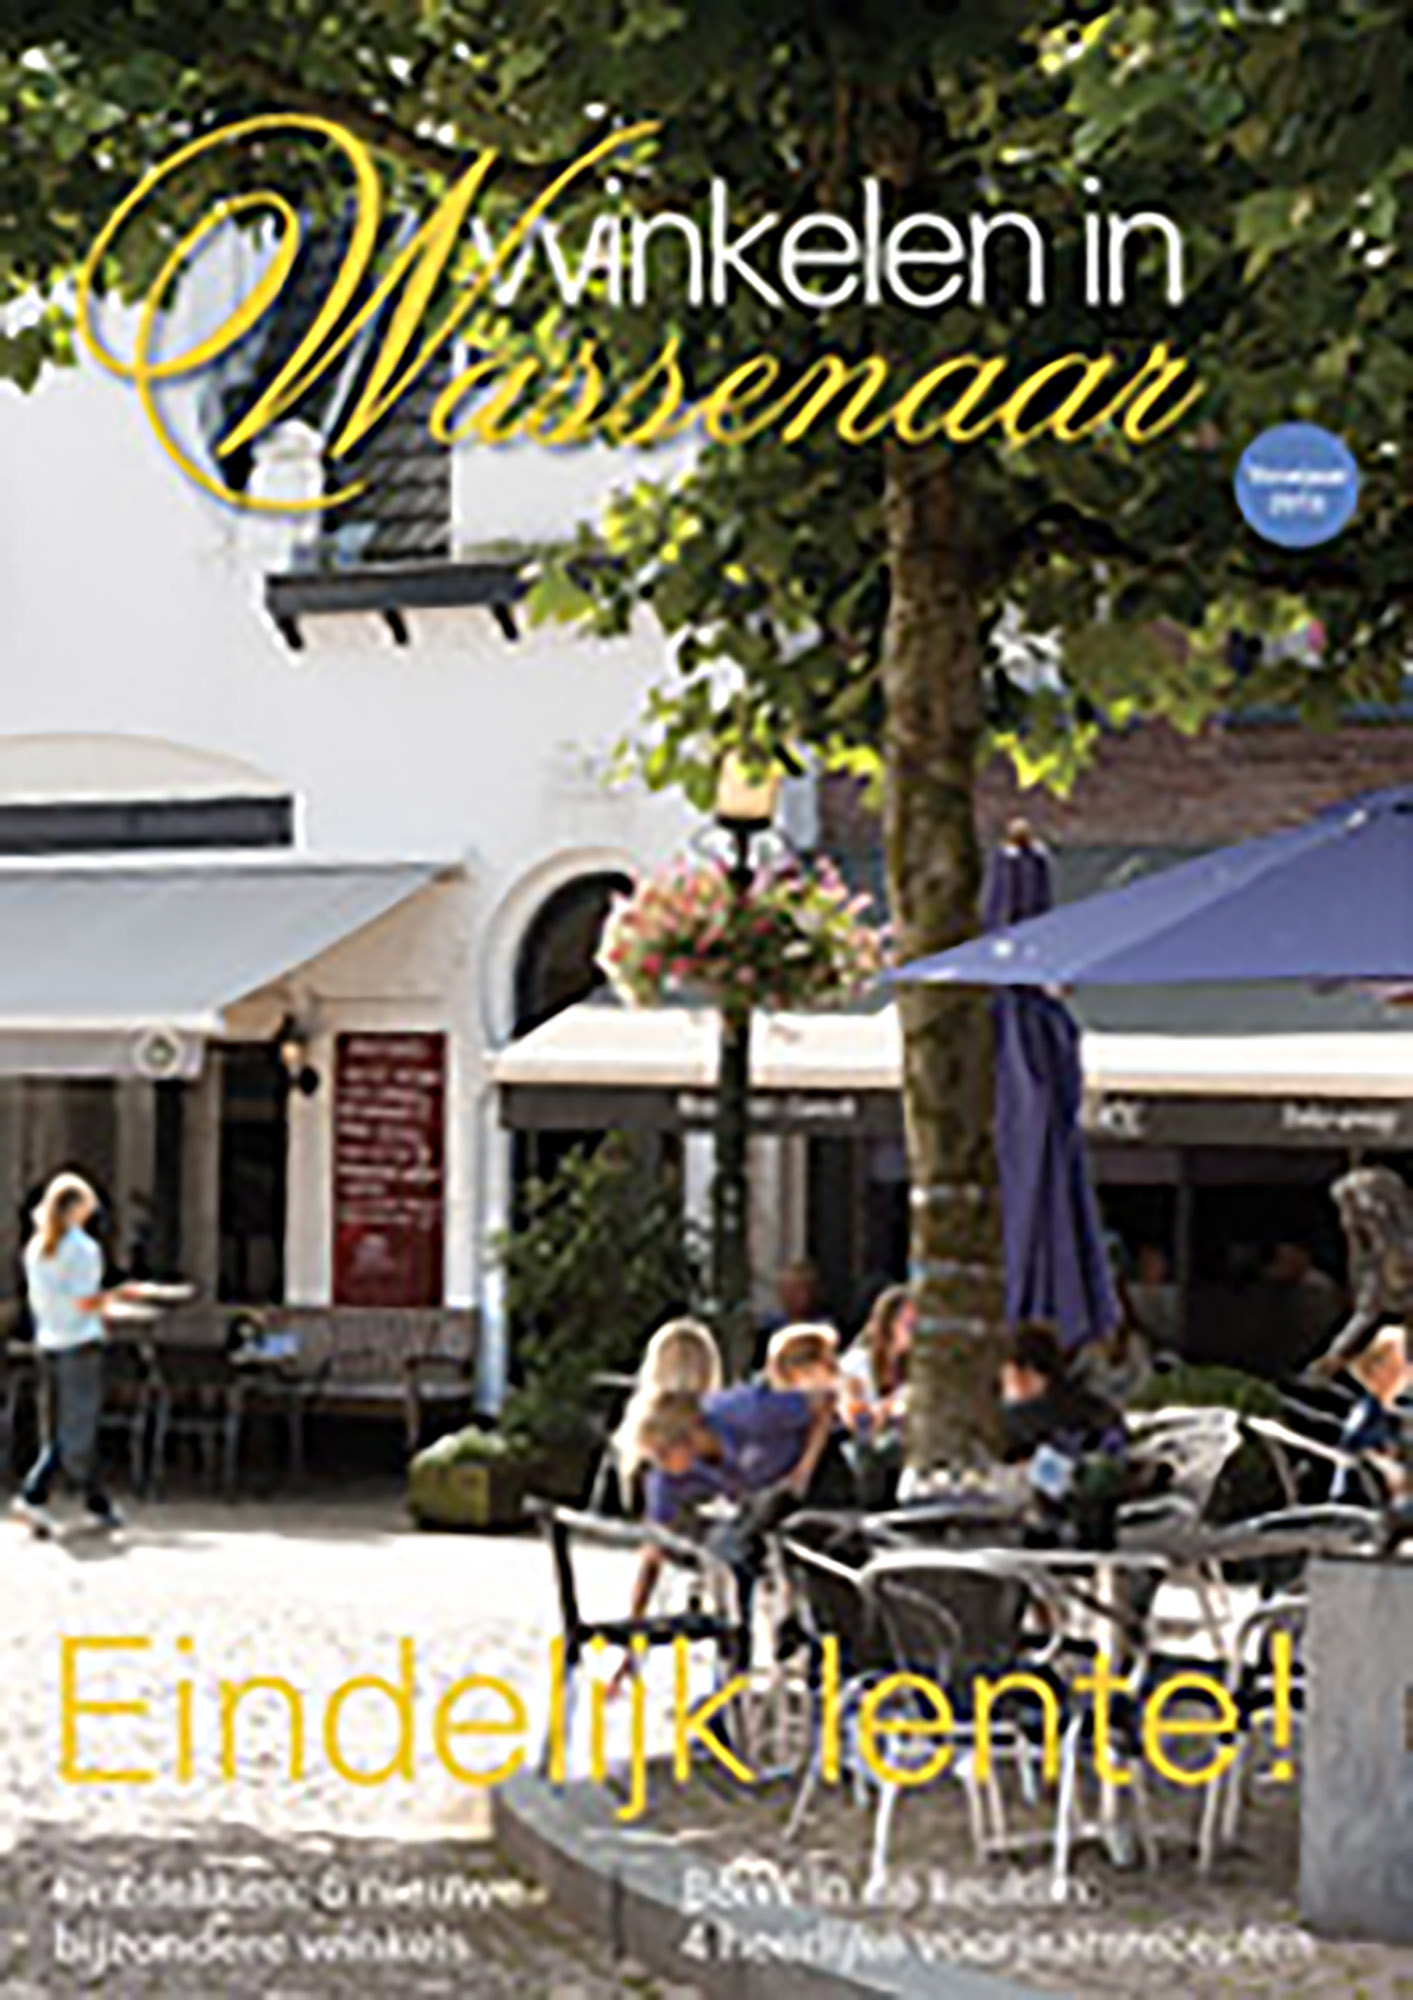 Winkelen in Wassenaar – Voorjaar 2013